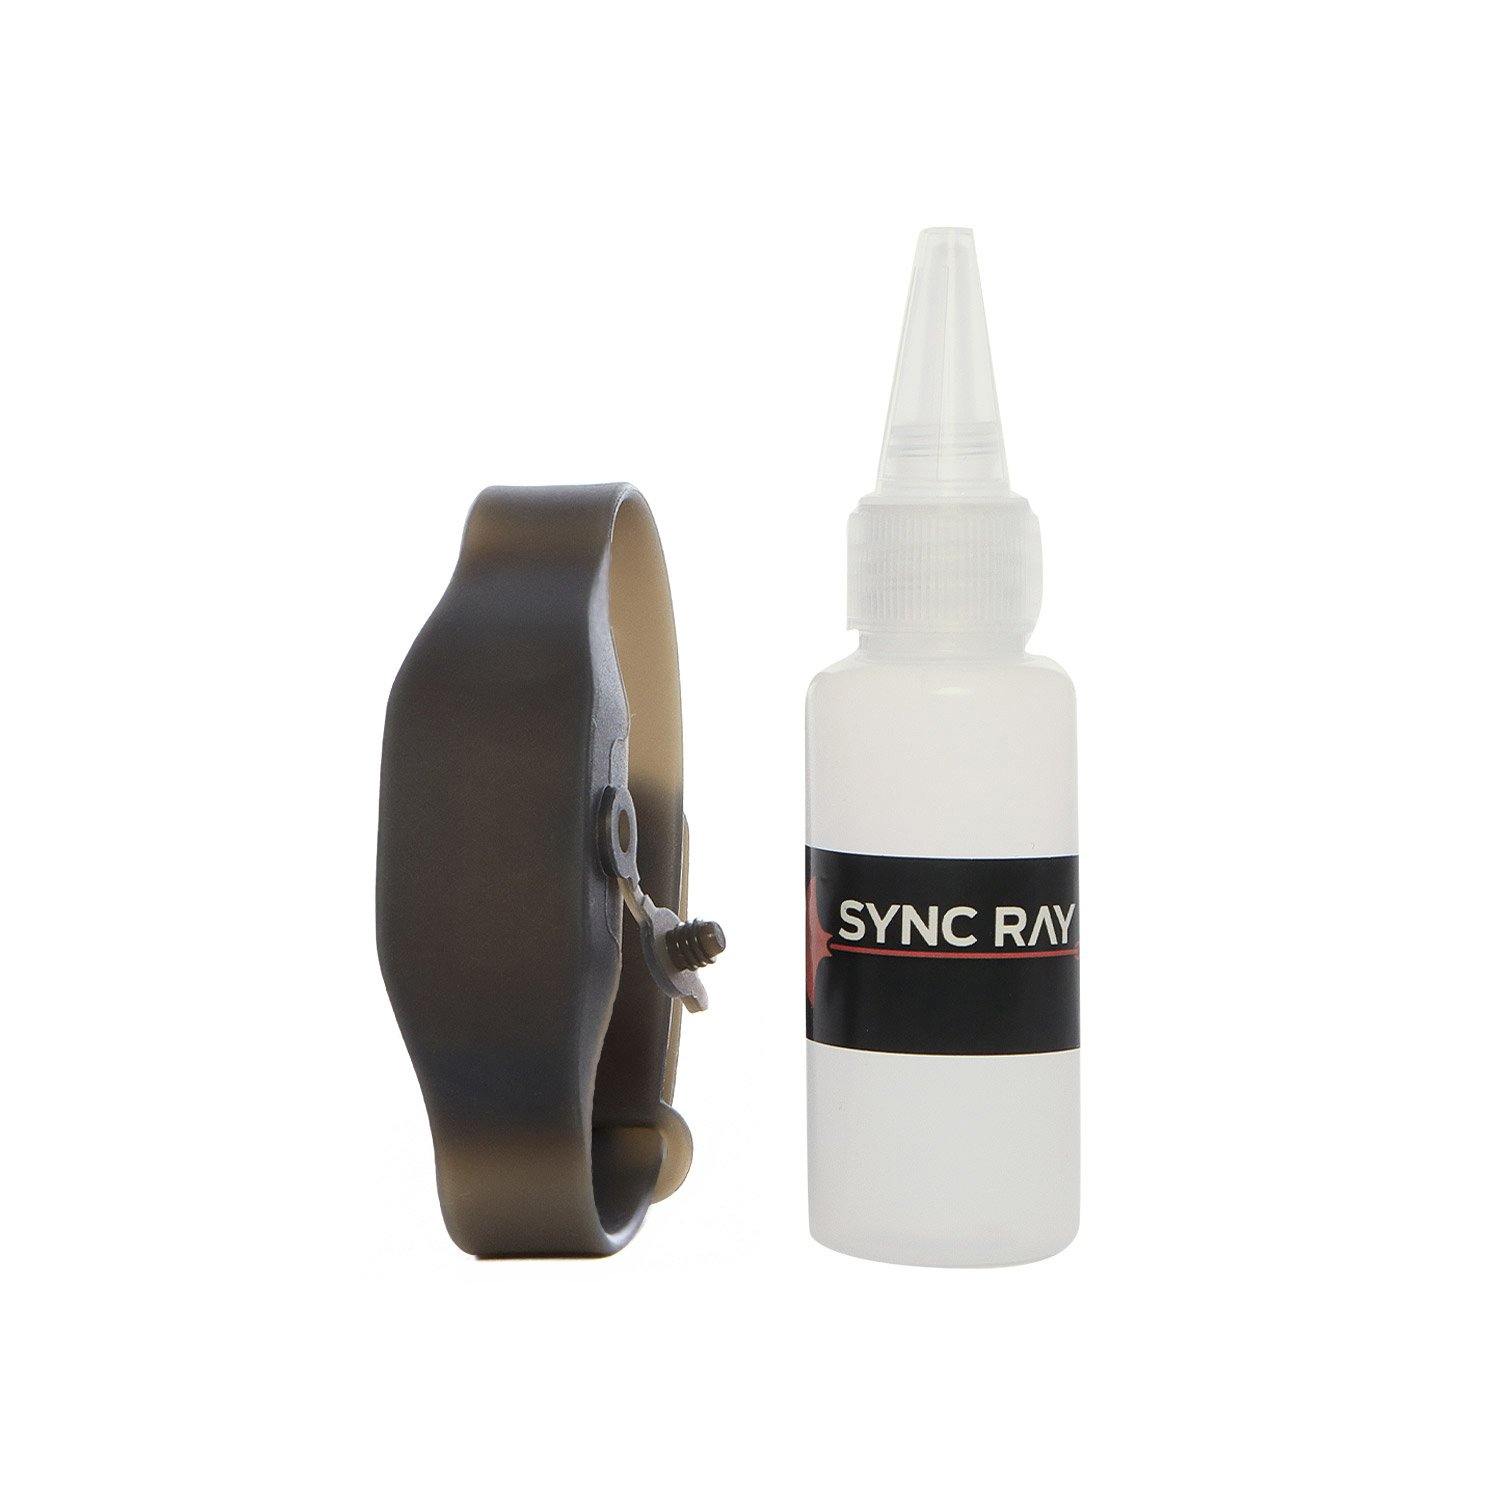 SYNC RAY BANDA SANITIZANTE DE SILICON GB10 GRIS - Sync Ray